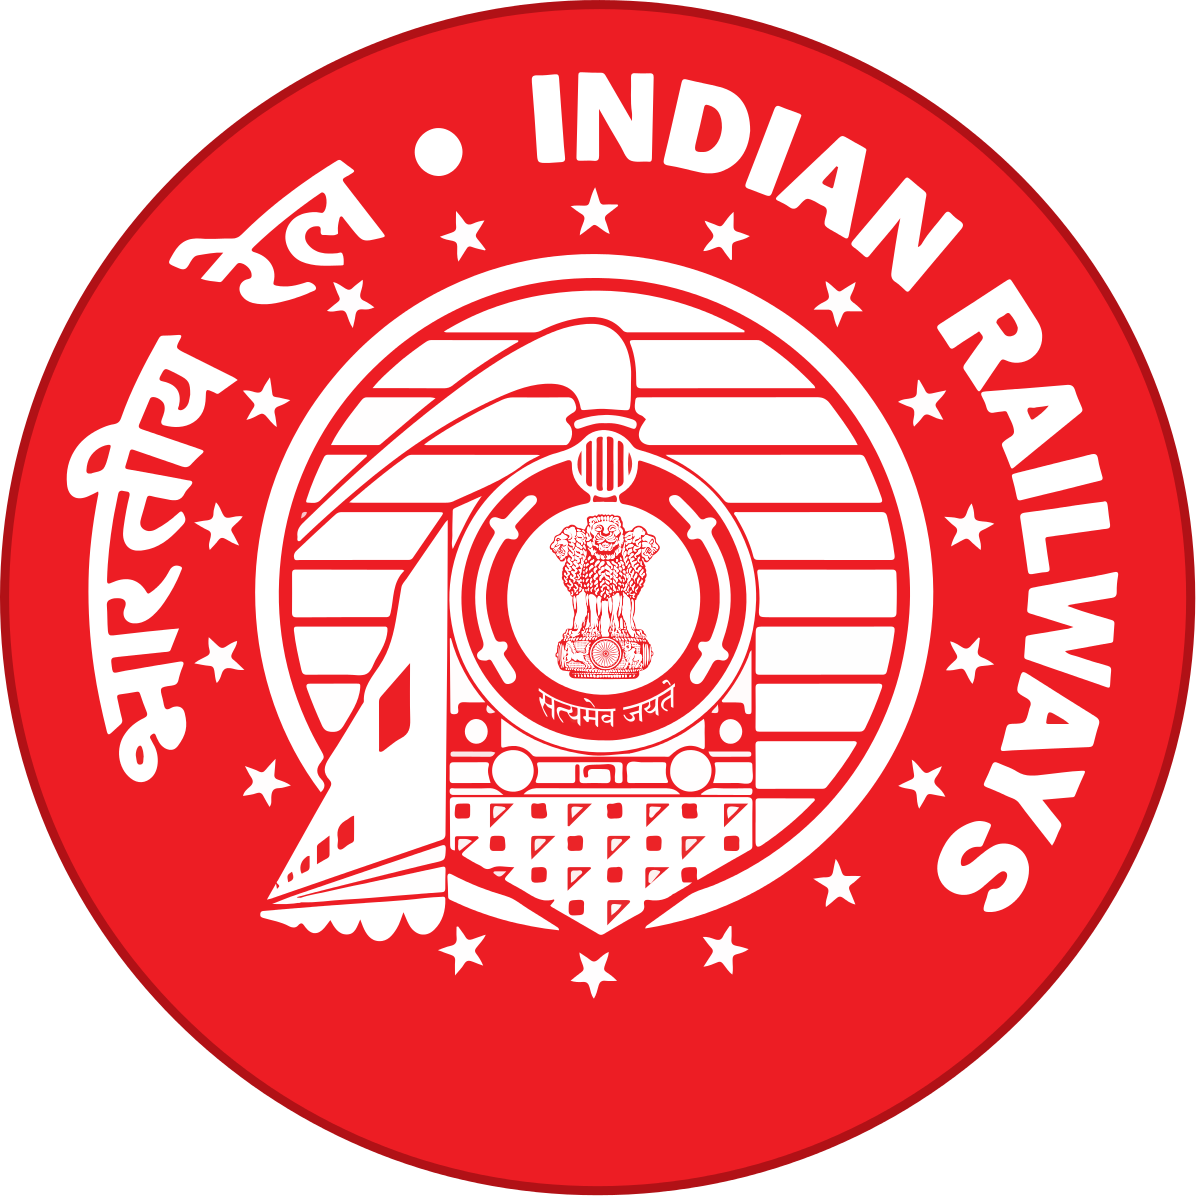 पुनर्गठित रेलवे बोर्ड लोगों को बेहतर सेवाएं देने पर ध्यान केंद्रित करेगा: विनोद कुमार यादव